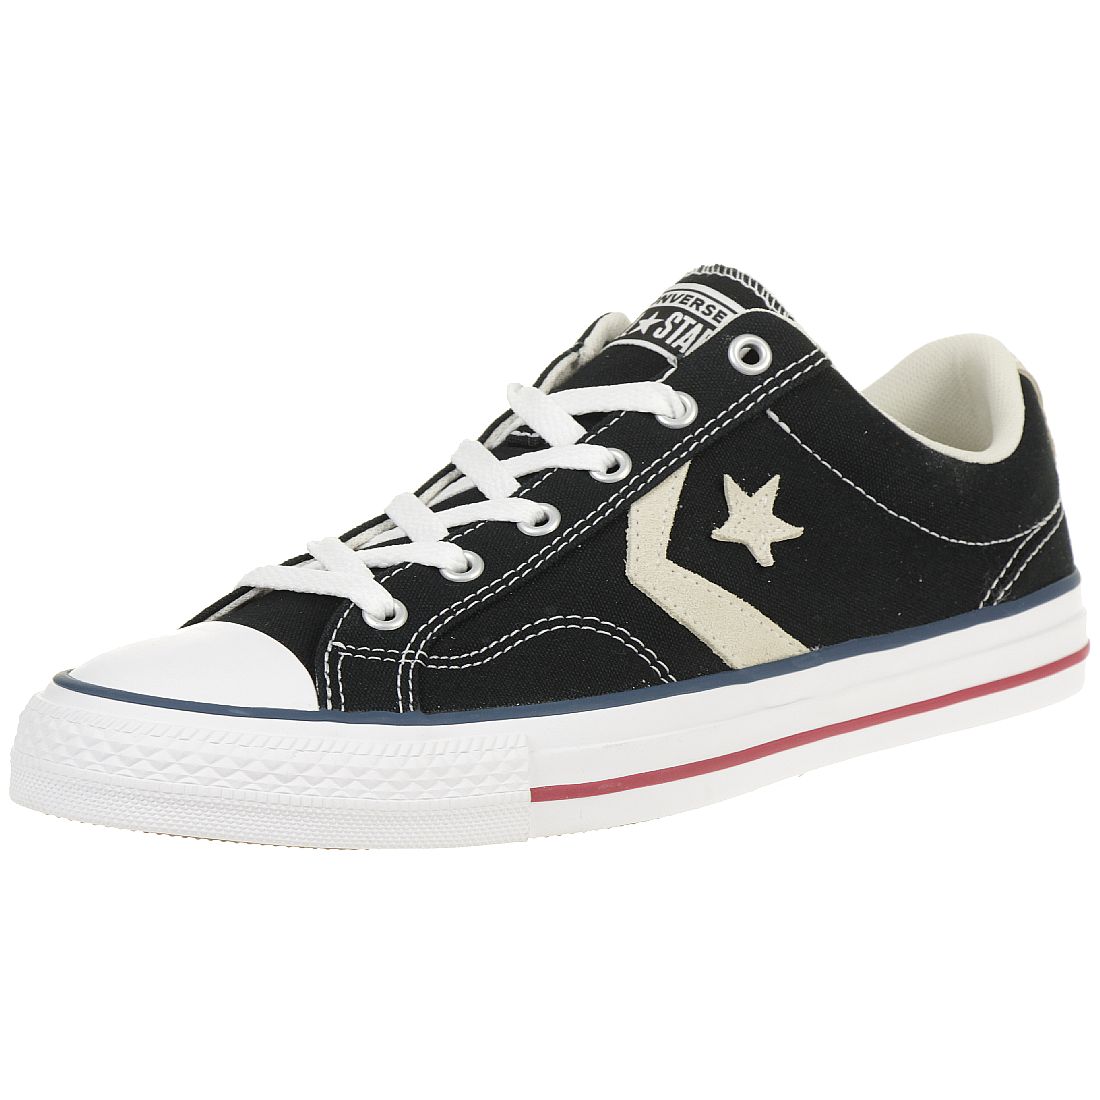 Converse STAR PLAYER OX Schuhe Sneaker Canvas Schwarz 144145C 37 EU